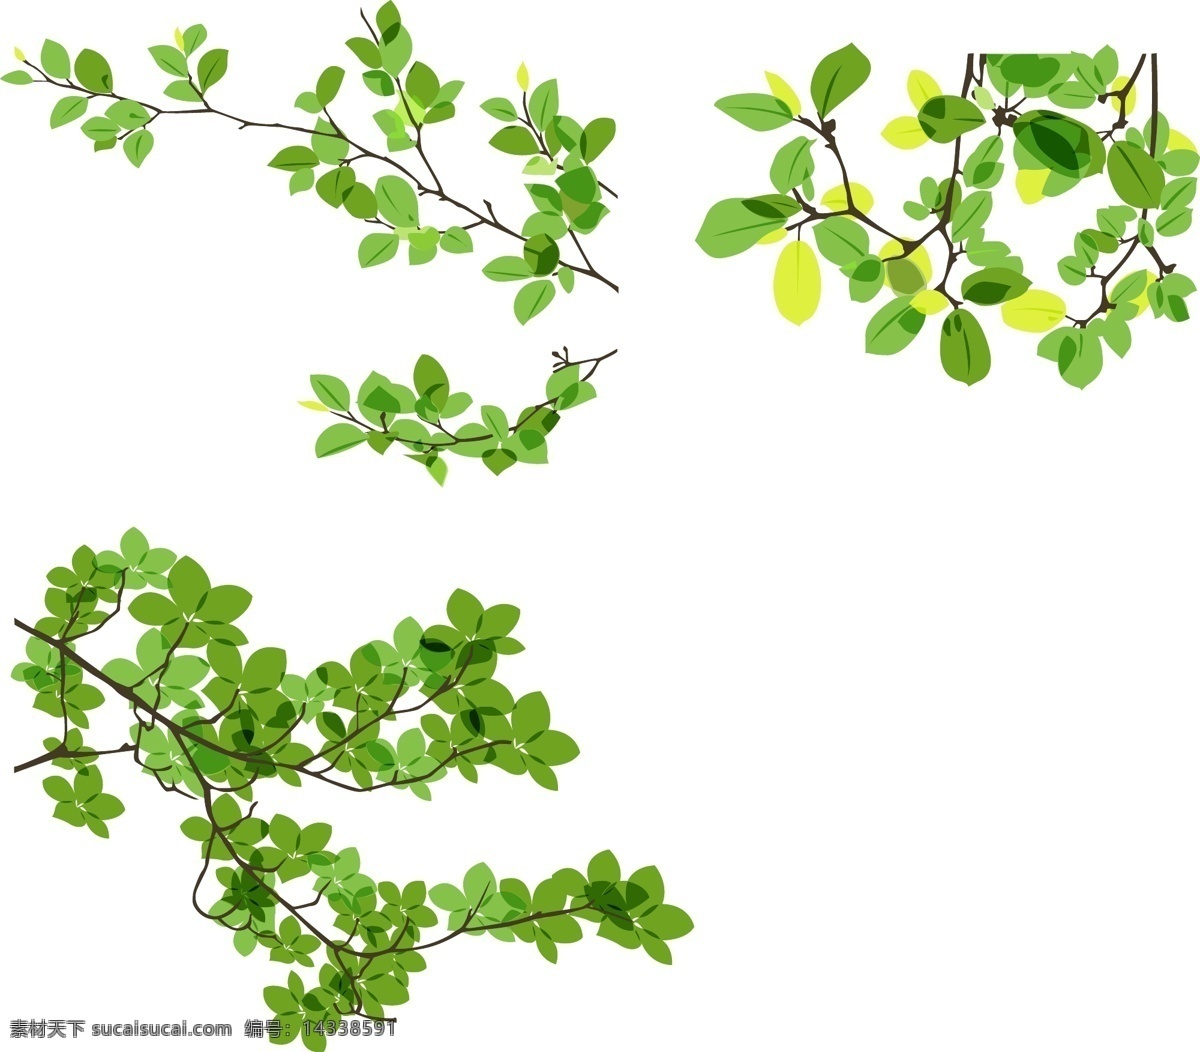 清新 绿叶 插画 春天 模板 设计稿 树枝 素材元素 植物 源文件 矢量图